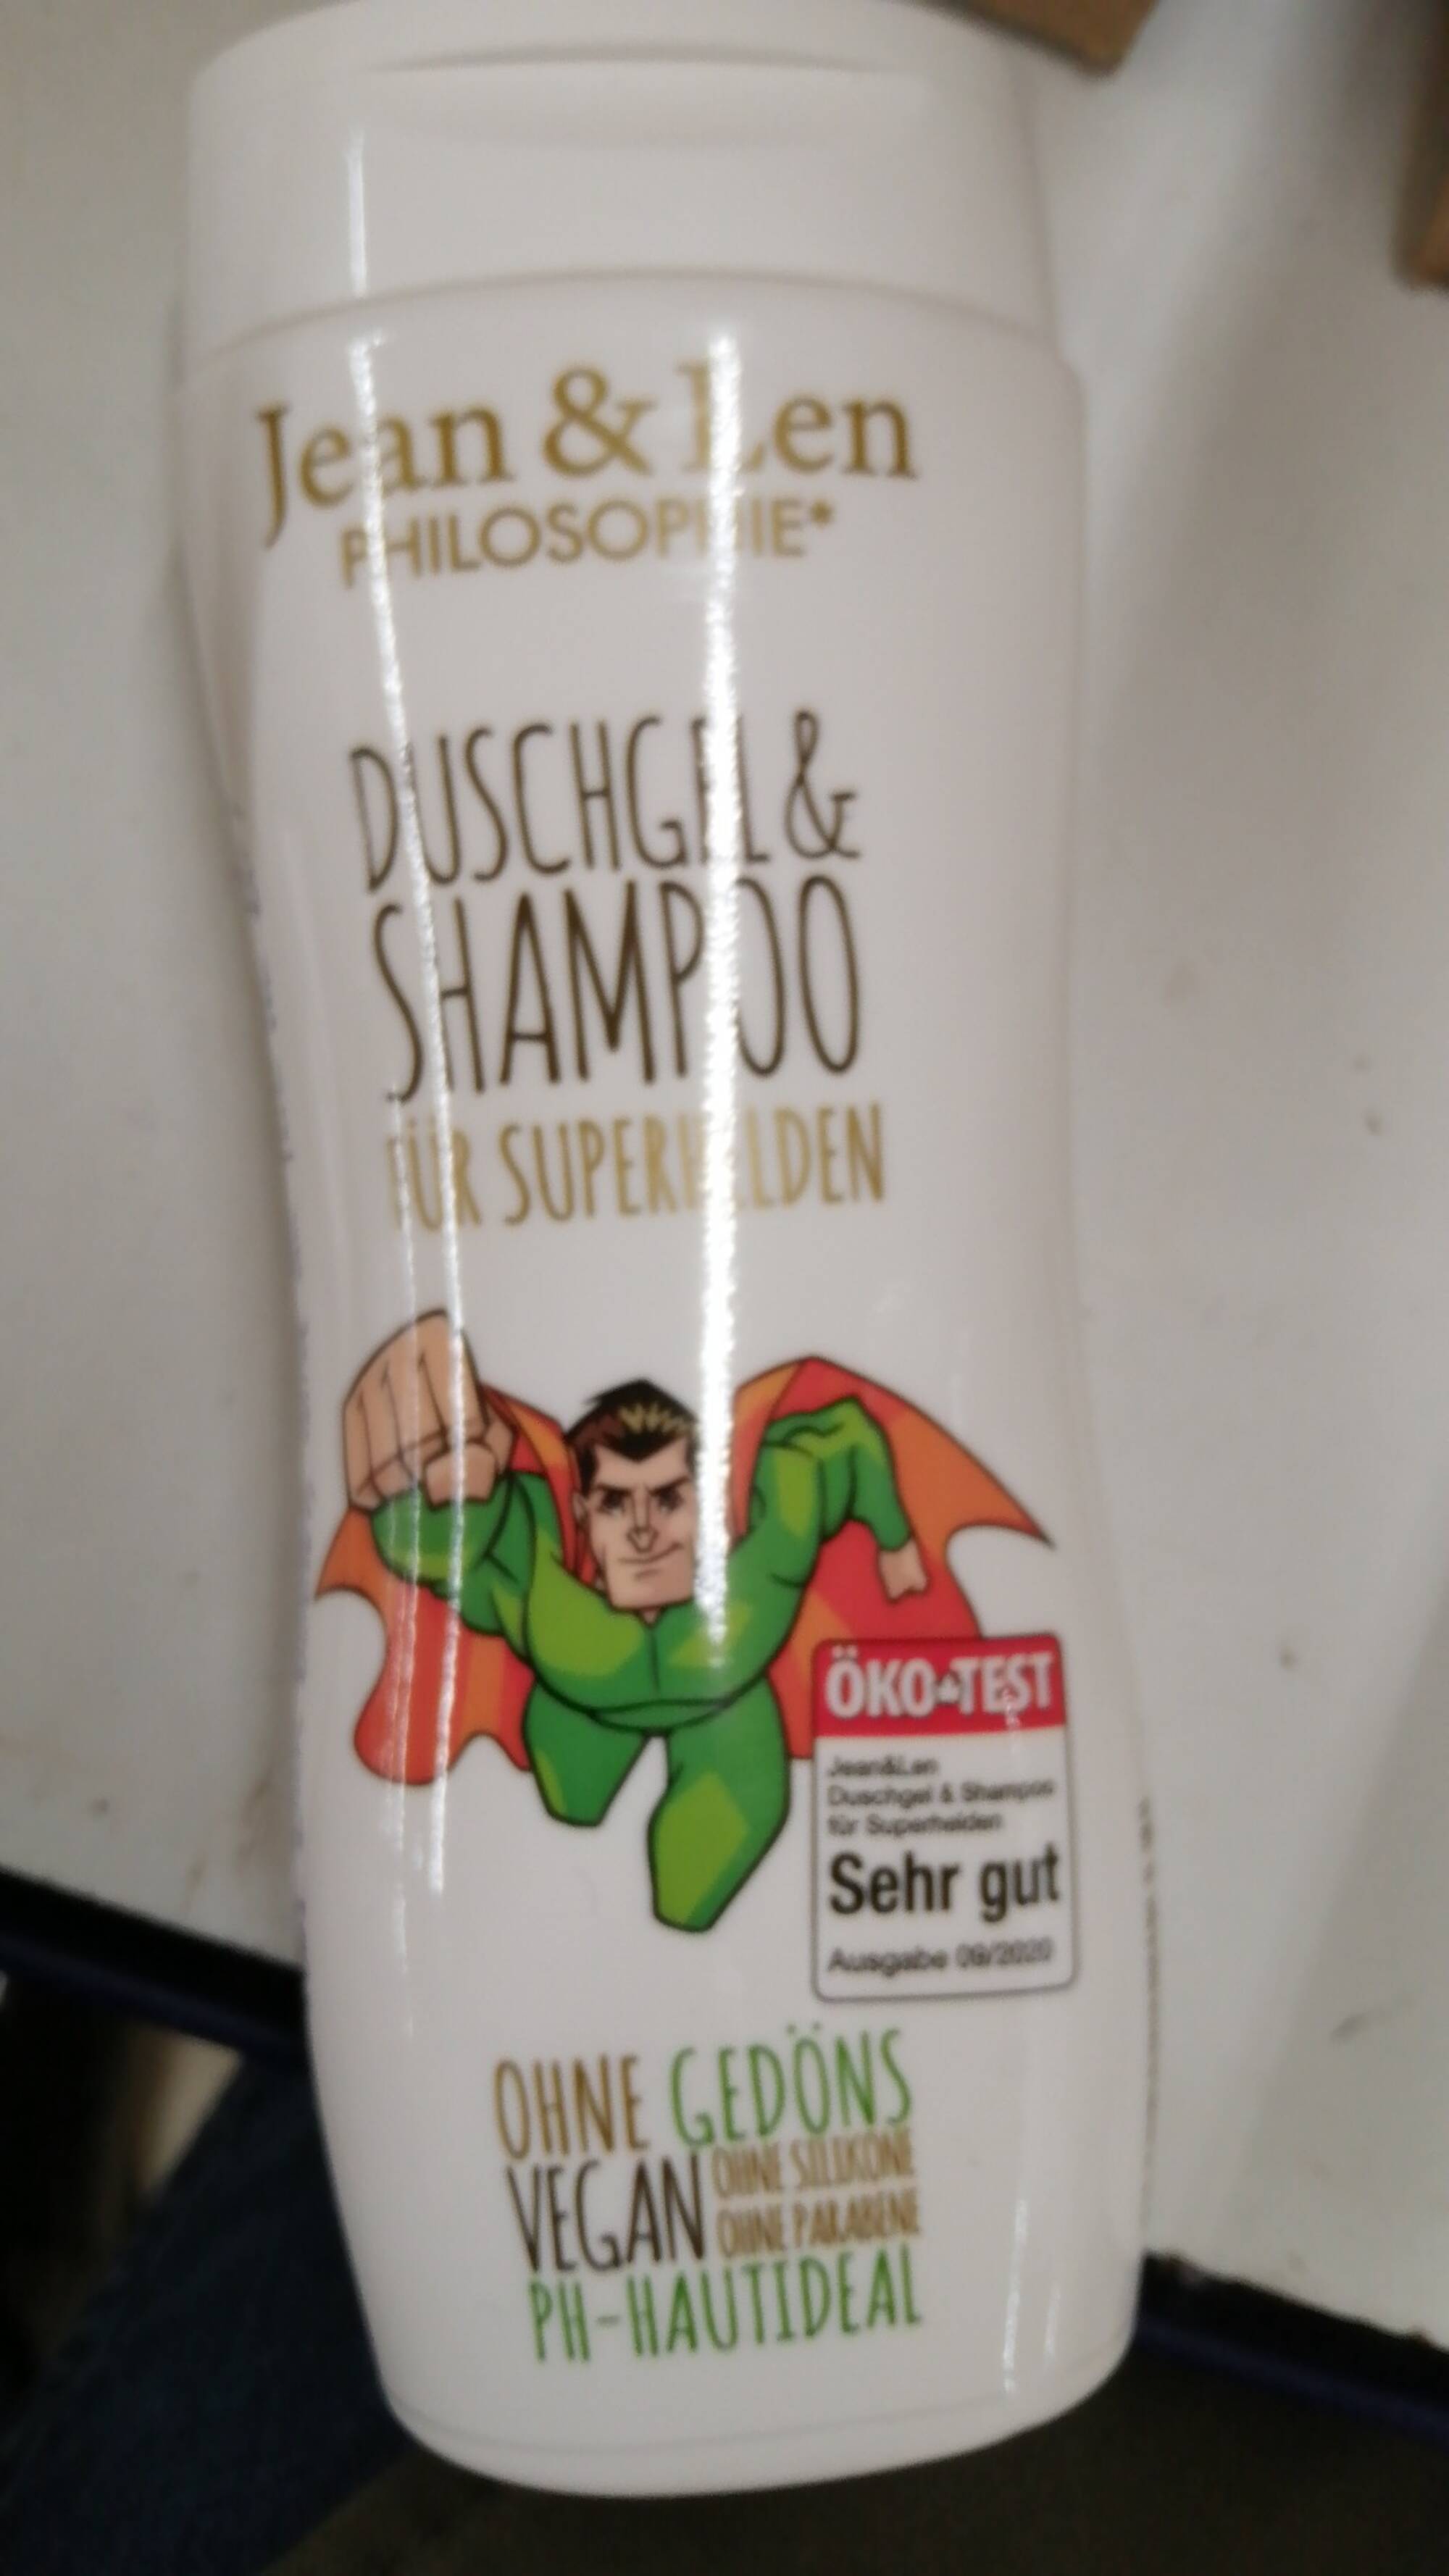 JEAN&LEN PHILOSOPHIE - Duschgel & shampoo für superhelden